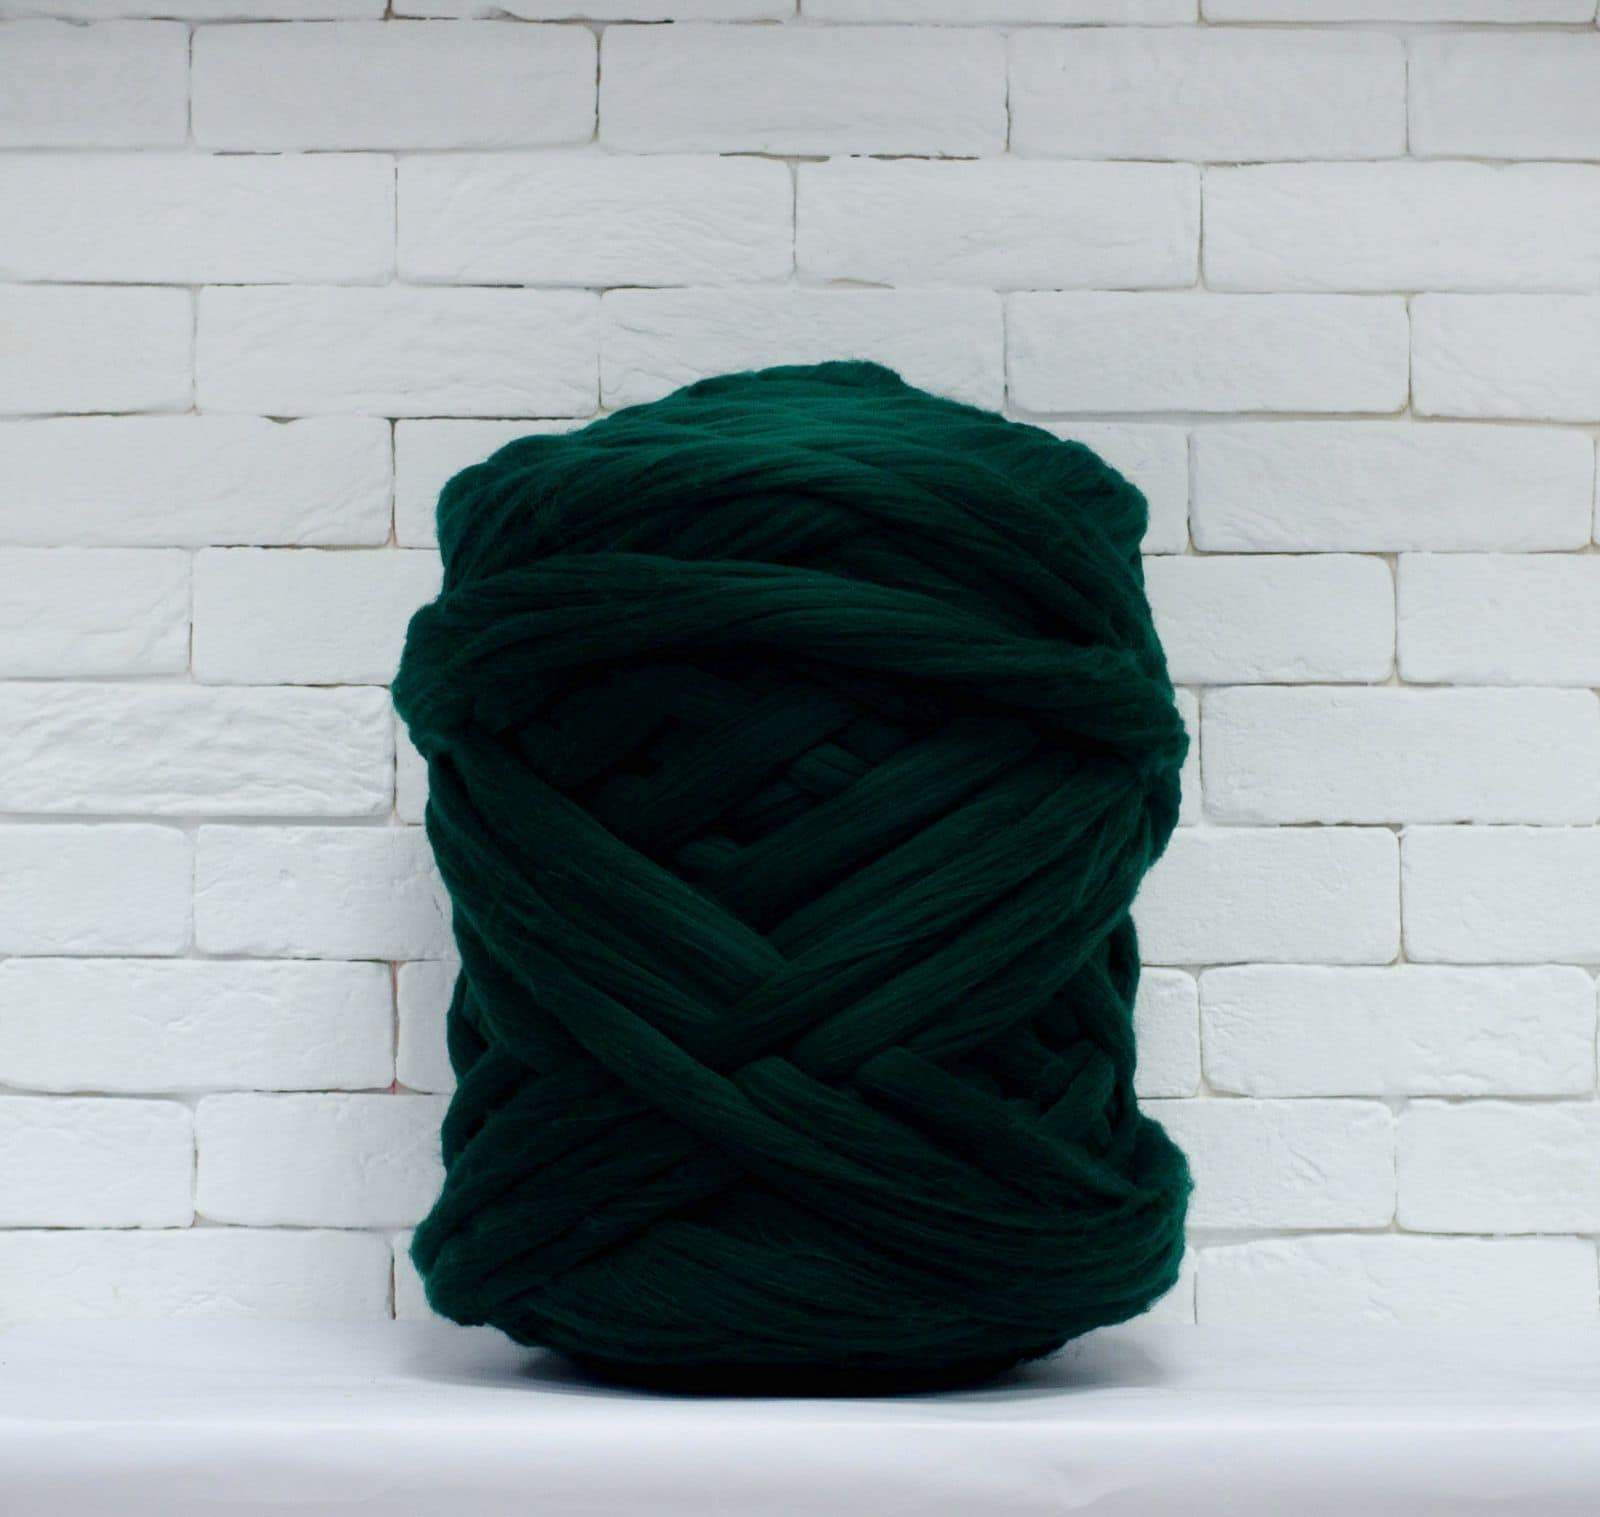 Best Deal for Giant Yarn Chunky Knit Yarn Wool Yarn Extreme Arm Knitting